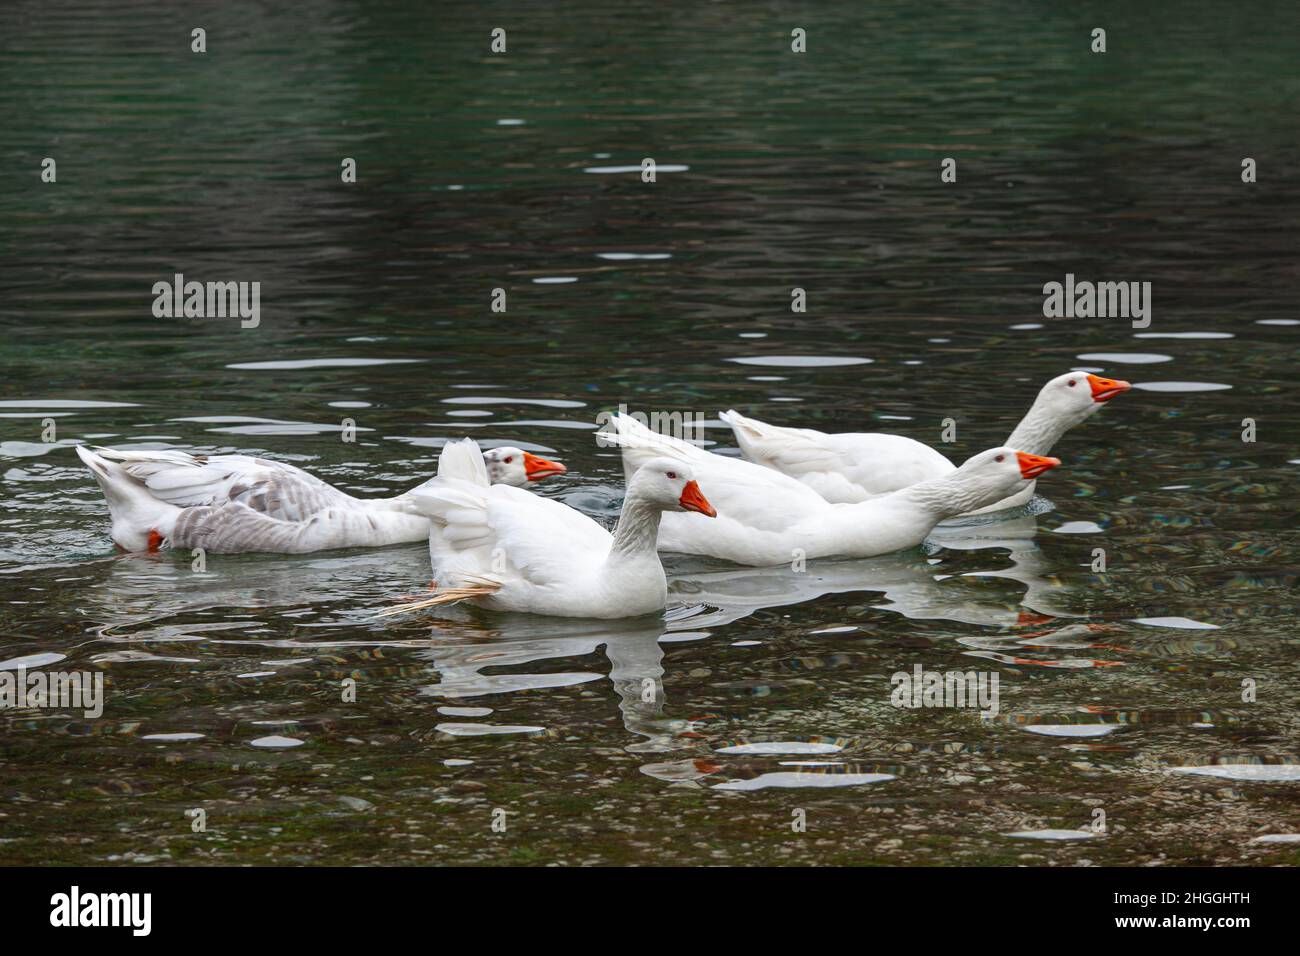 Oche selvatiche con piume bianche nuotano nelle acque limpide del Lago di San Domenico. Villalago, provincia di l'Aquila, Abruzzo, Italia, Europa Foto Stock